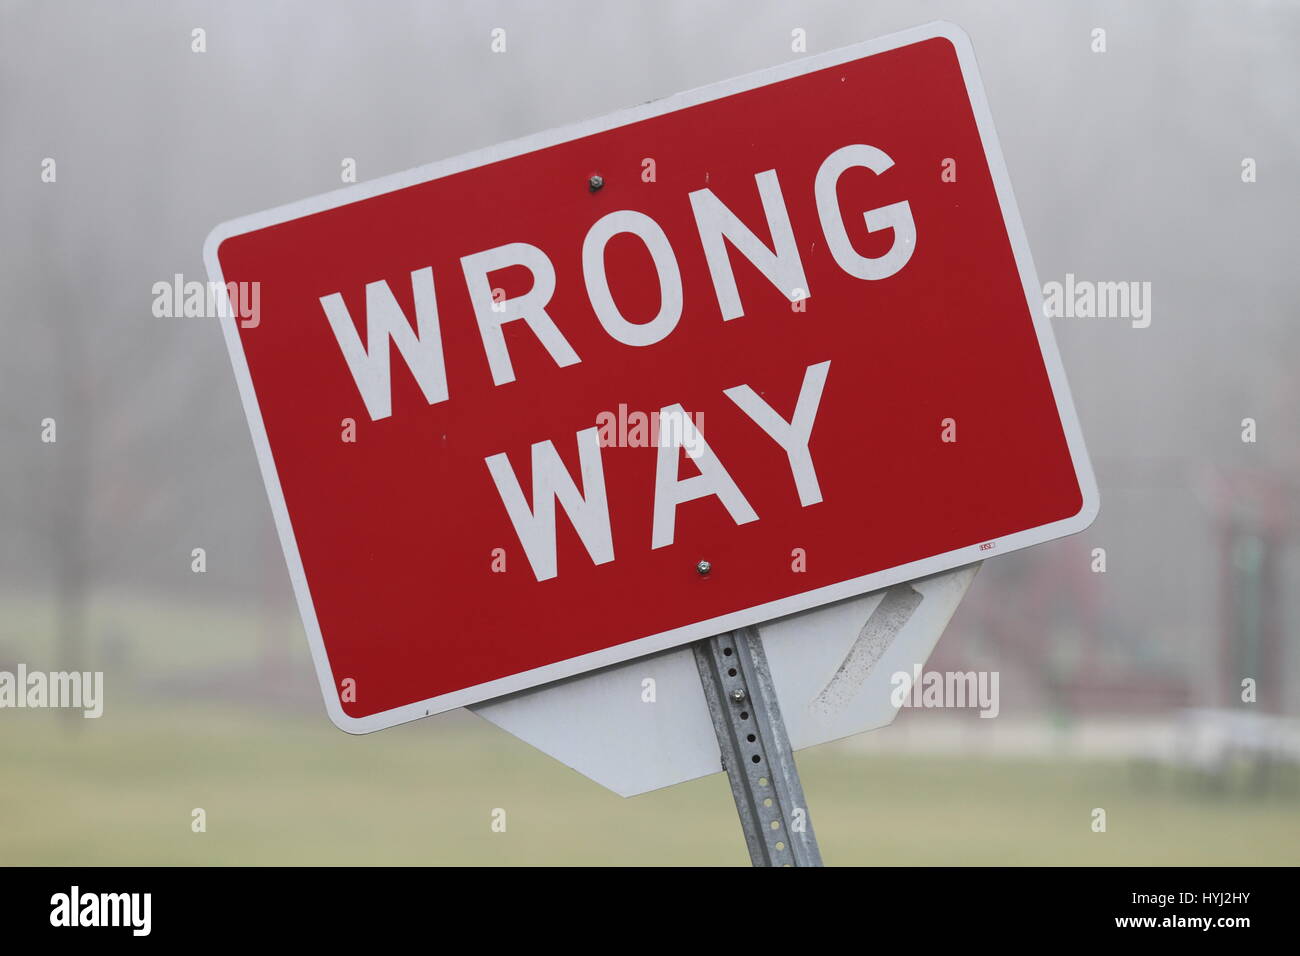 Inclinada roja rectangular cartel con la inscripción "camino equivocado" montado sobre un soporte metálico. Señal de tráfico que prohíbe el movimiento de avance. Foto de stock